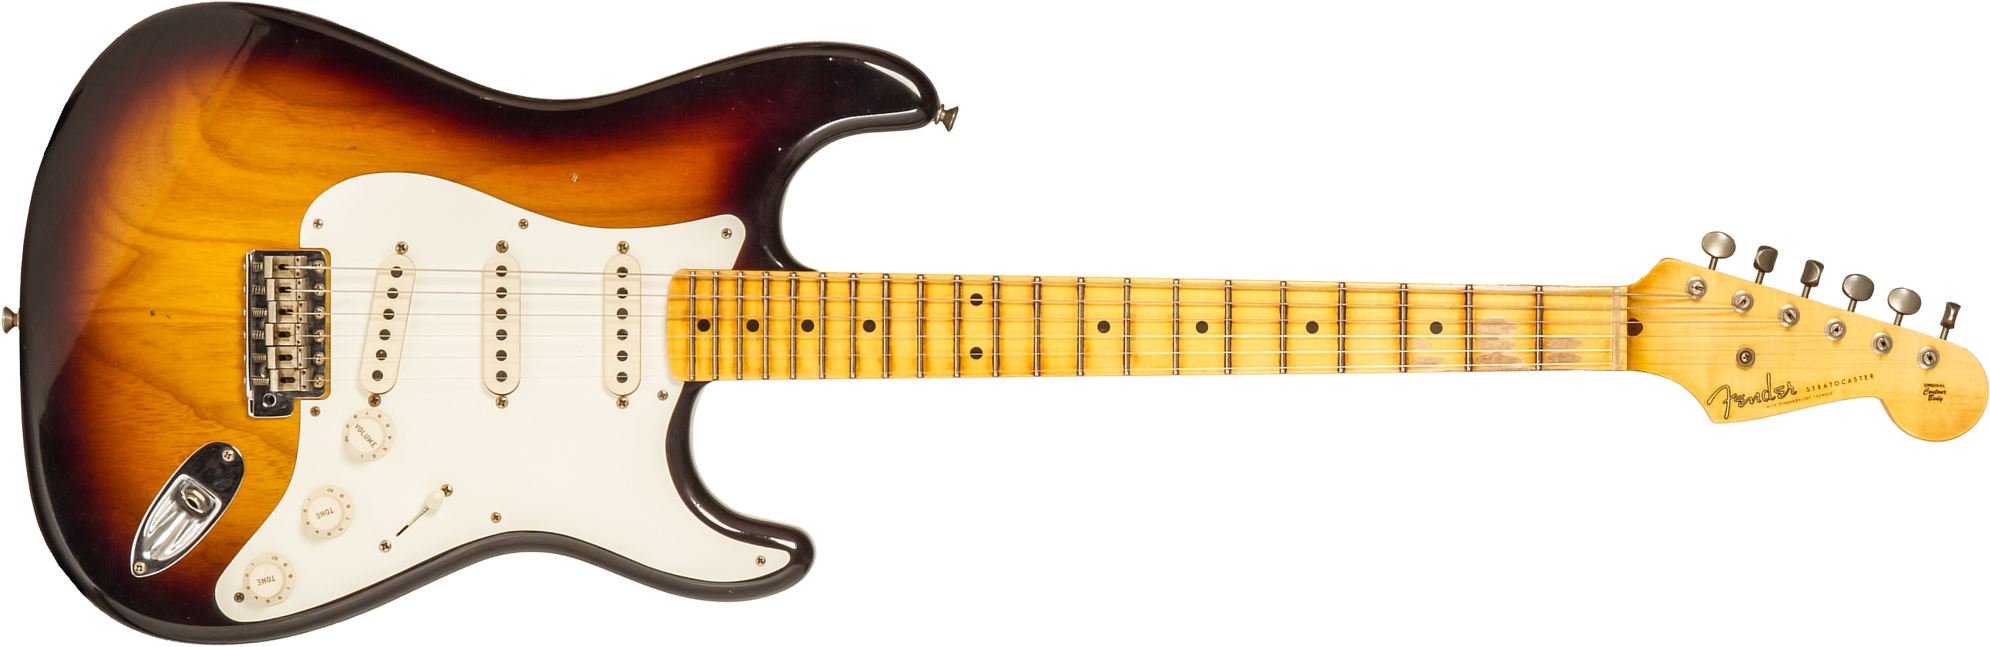 Fender Custom Shop Strat 1955 3s Trem Mn #r130058 - Journeyman Relic 2-color Sunburst - Guitarra eléctrica con forma de str. - Main picture